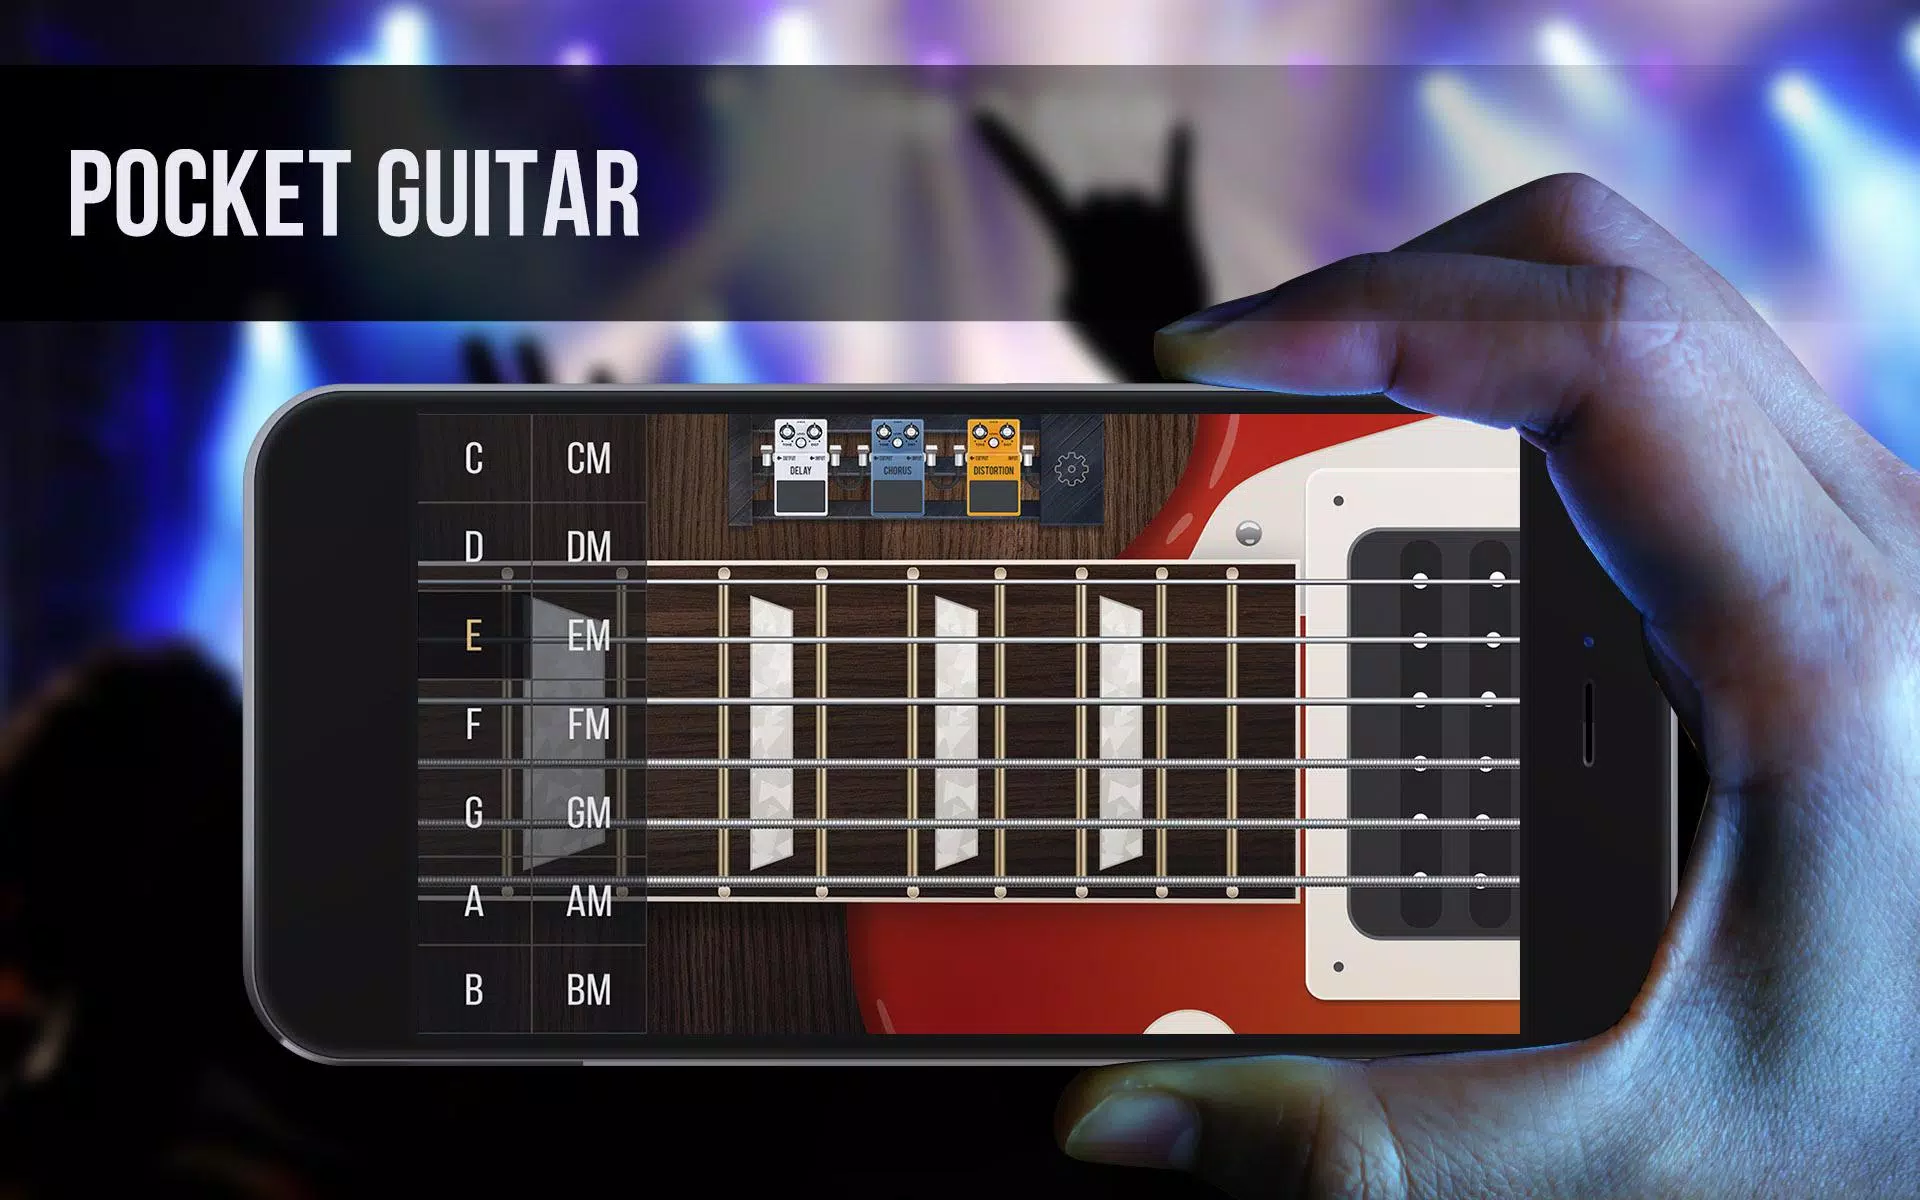 Real guitar - guitar simulator APK for Android Download